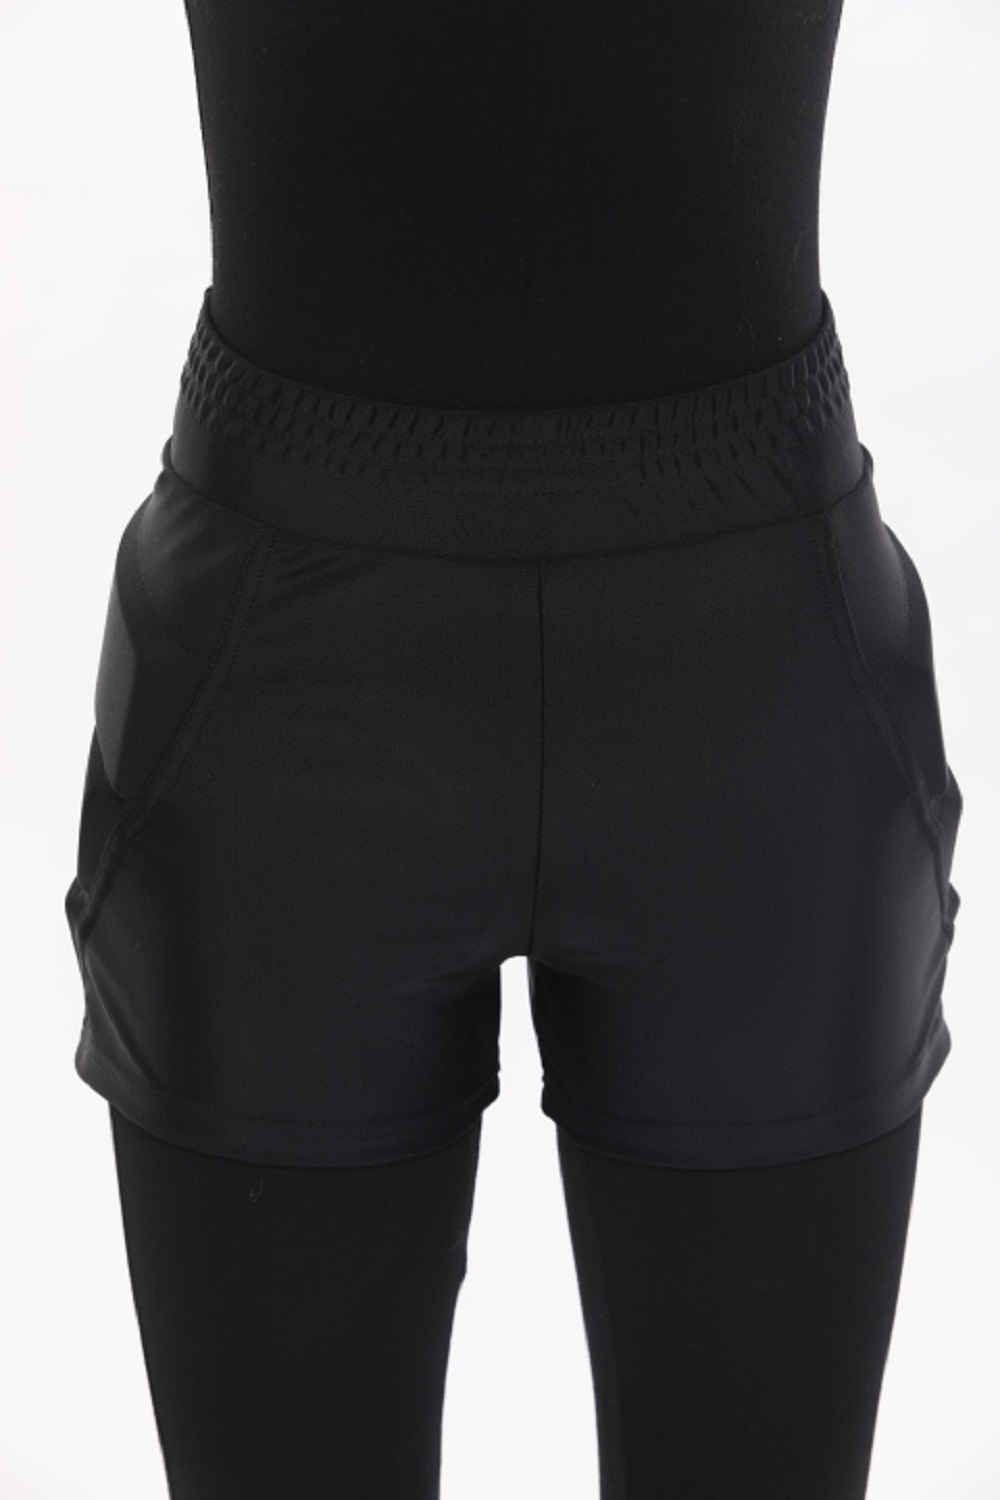 Защитные шорты усиленные для фигурного катания и роликов Chersa, цвет: черные 152-158